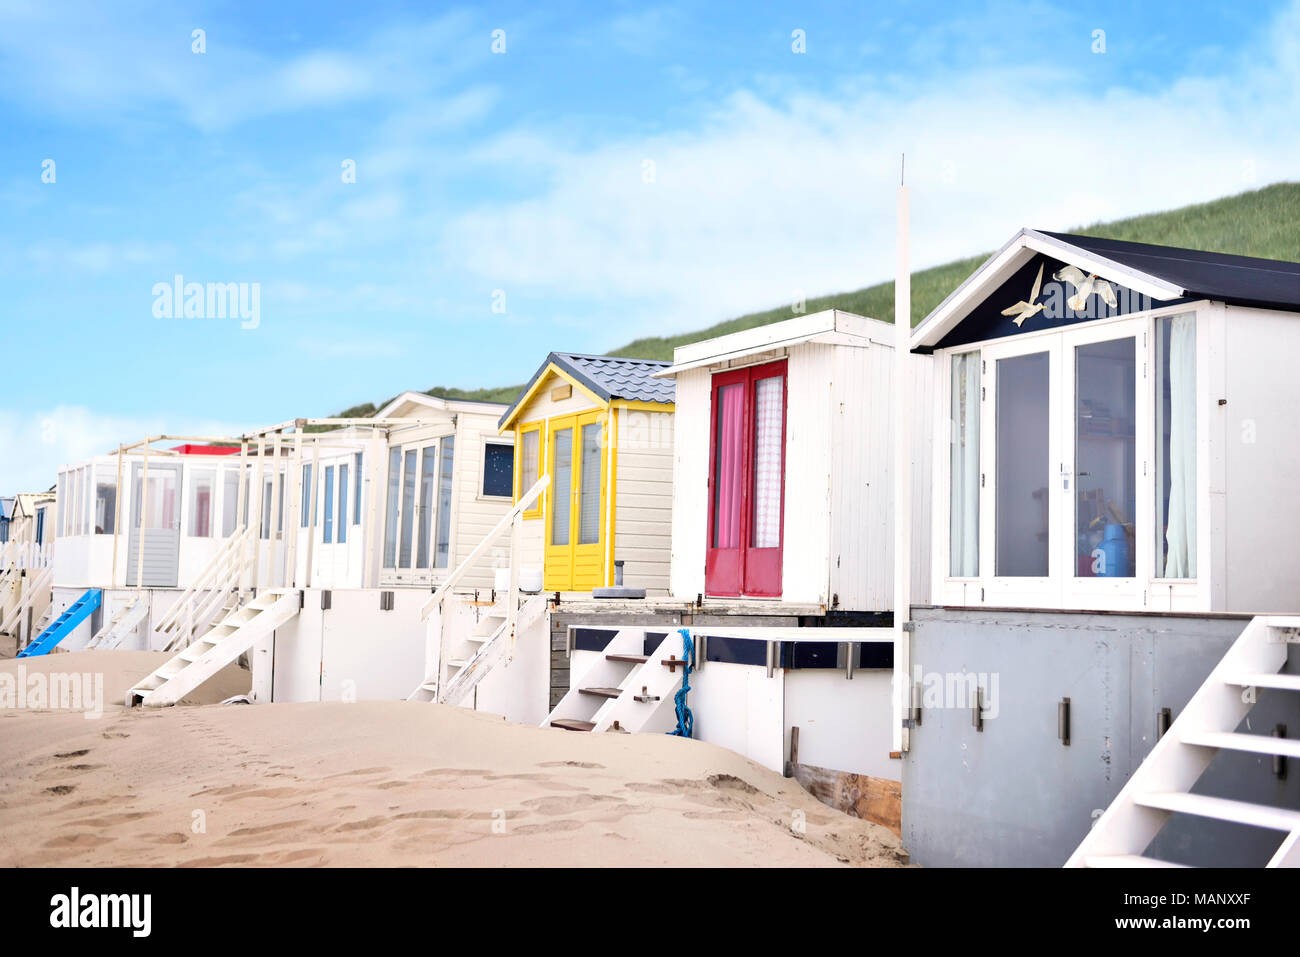 Wunderschön bemalte Strand Hütten oder kleine Häuser auf einen Strand. Strand, Dünen und Sand, Strand Leben oder Sommerferien Szene. Stockfoto